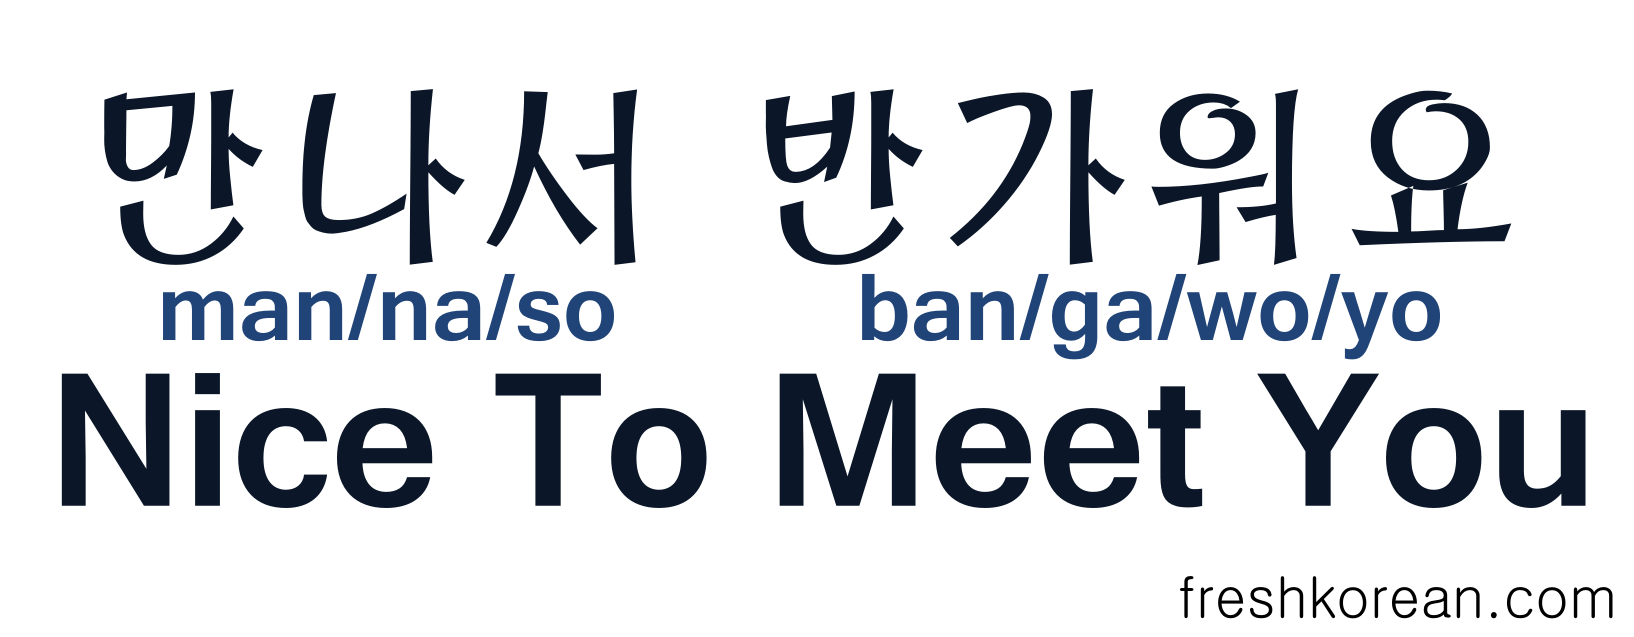 To Meet Nice To Meet You Fresh Korean